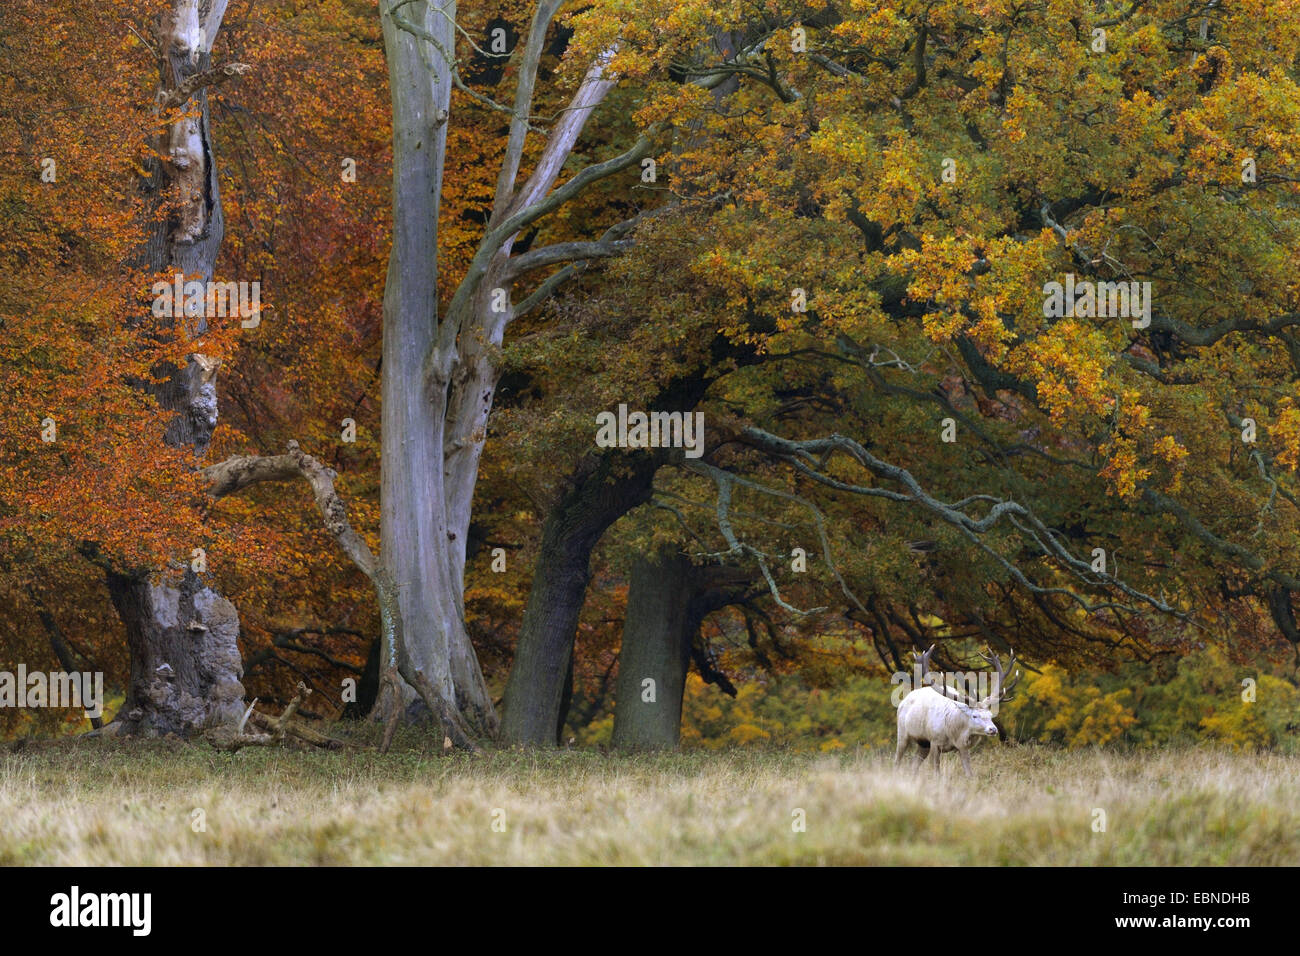 Red Deer (Cervus elaphus), forme blanche au bord de la forêt en automne, au Danemark Banque D'Images